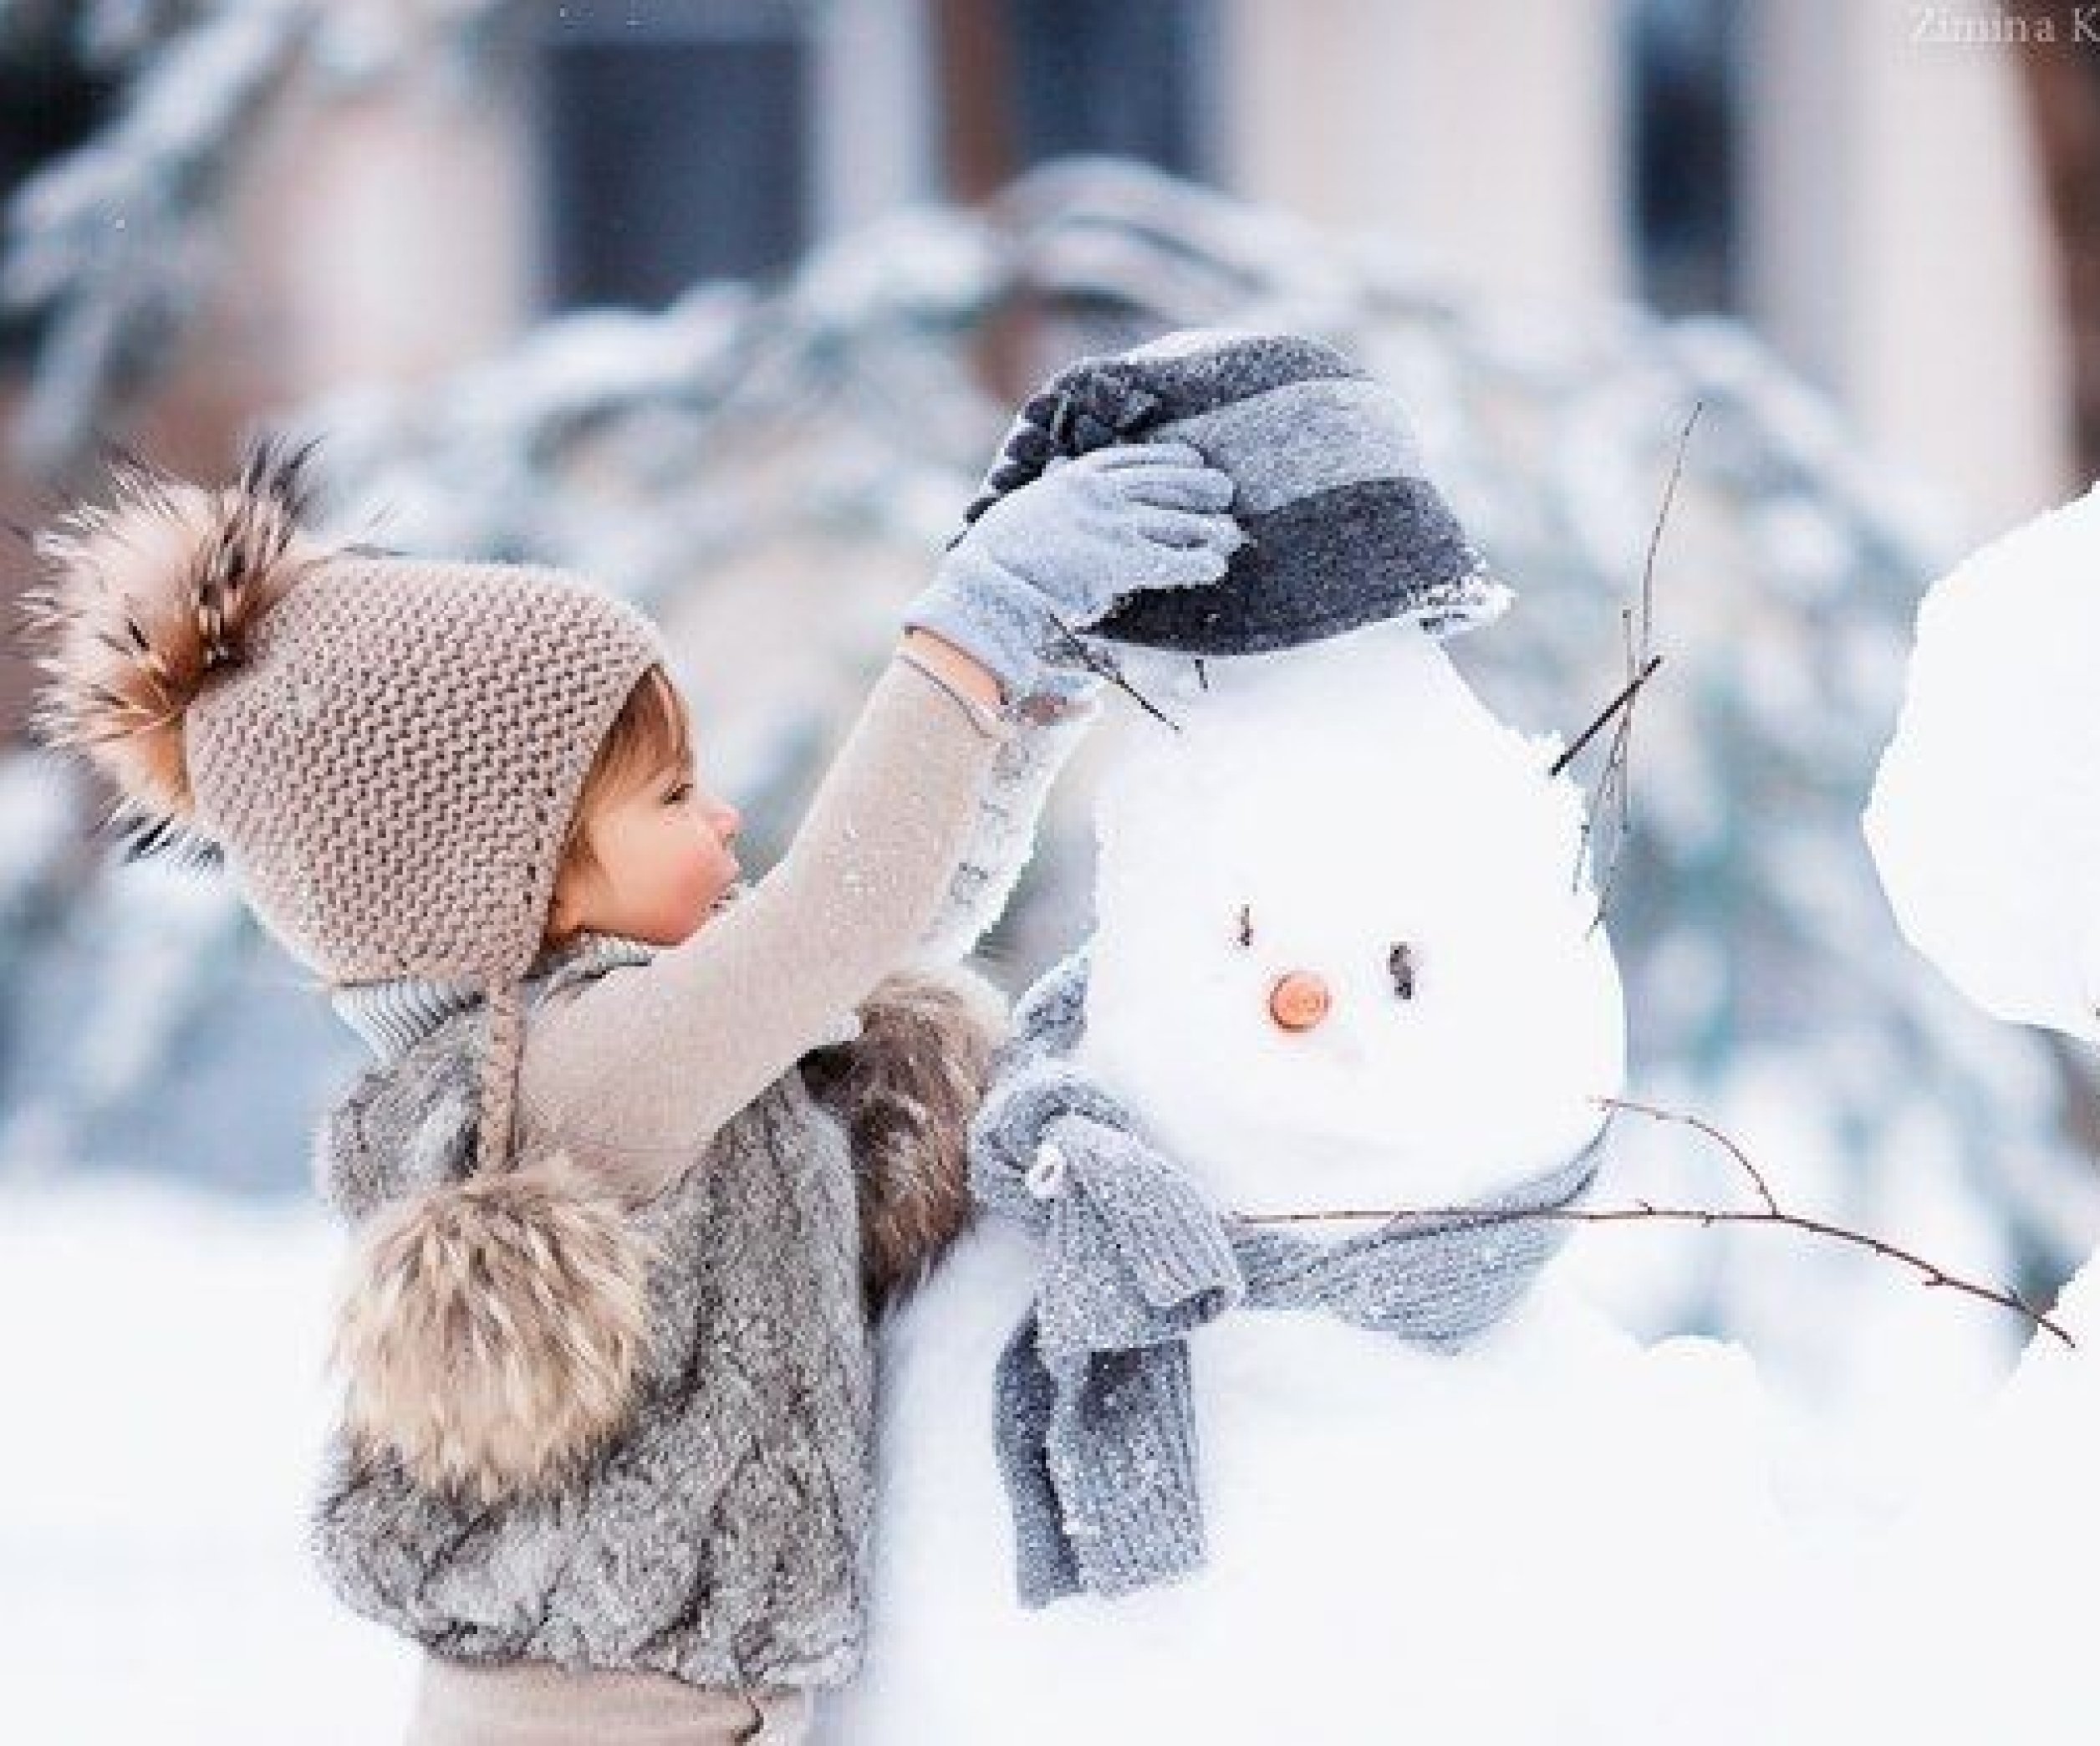 Зимние игры для детей на улице - подвижные занятия на свежем воздухе